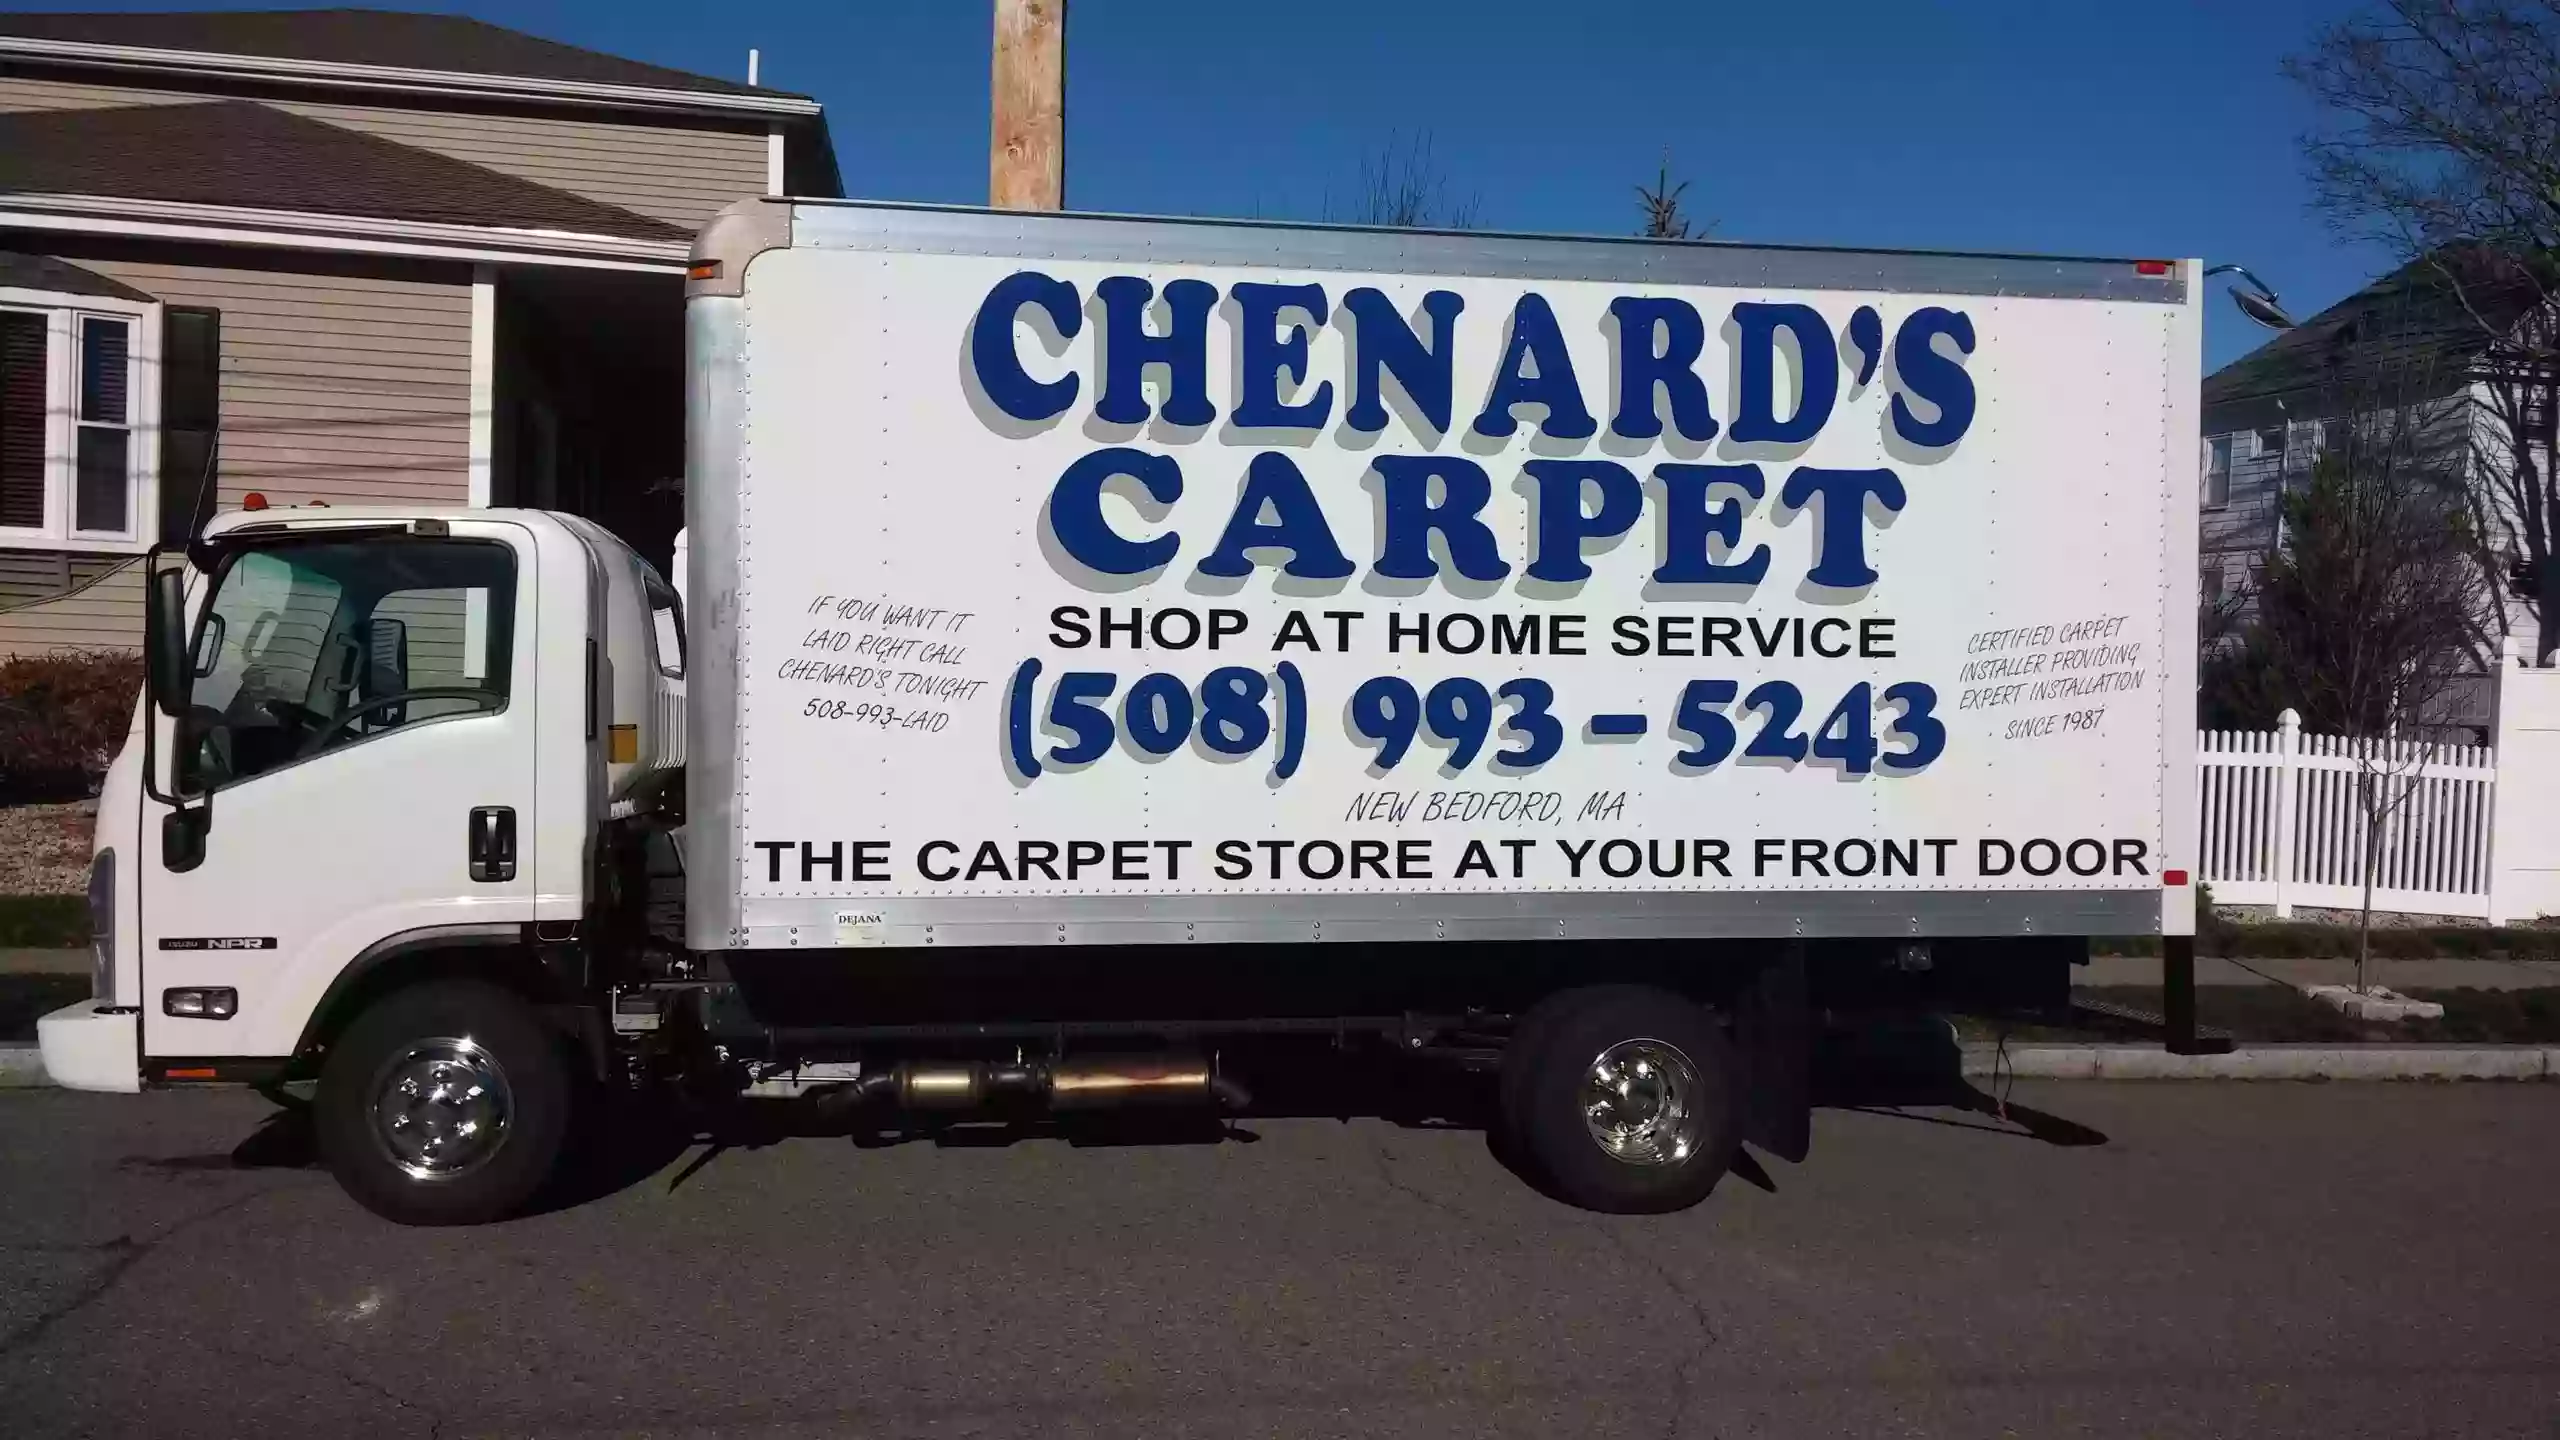 Chenard's Carpet Shop-Home Services